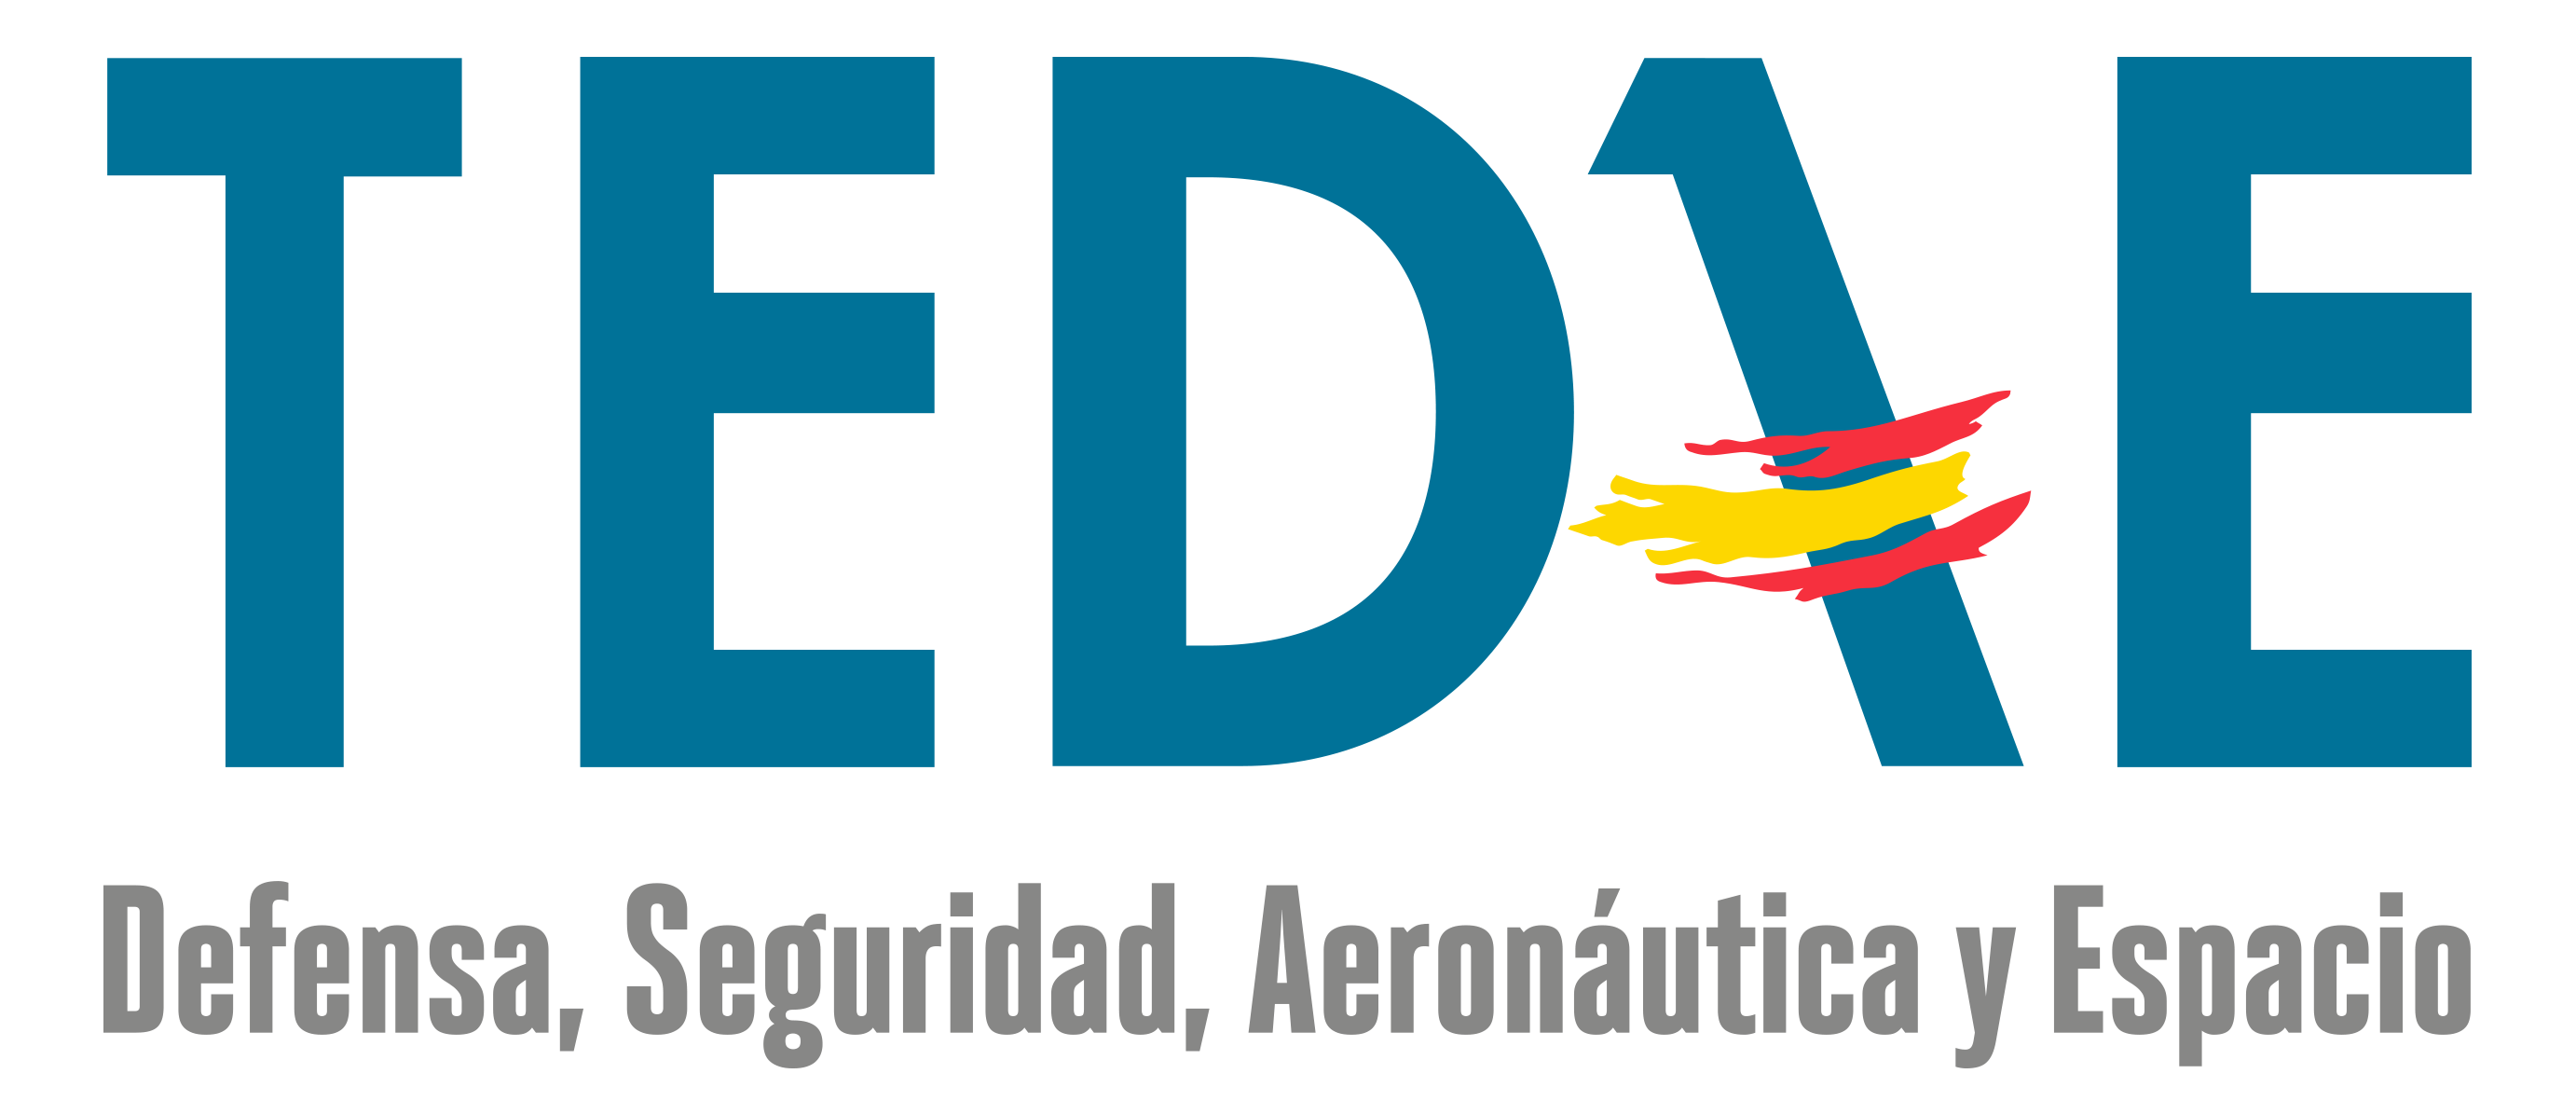 TEDAE - Aerospace Defense Meetings Spain